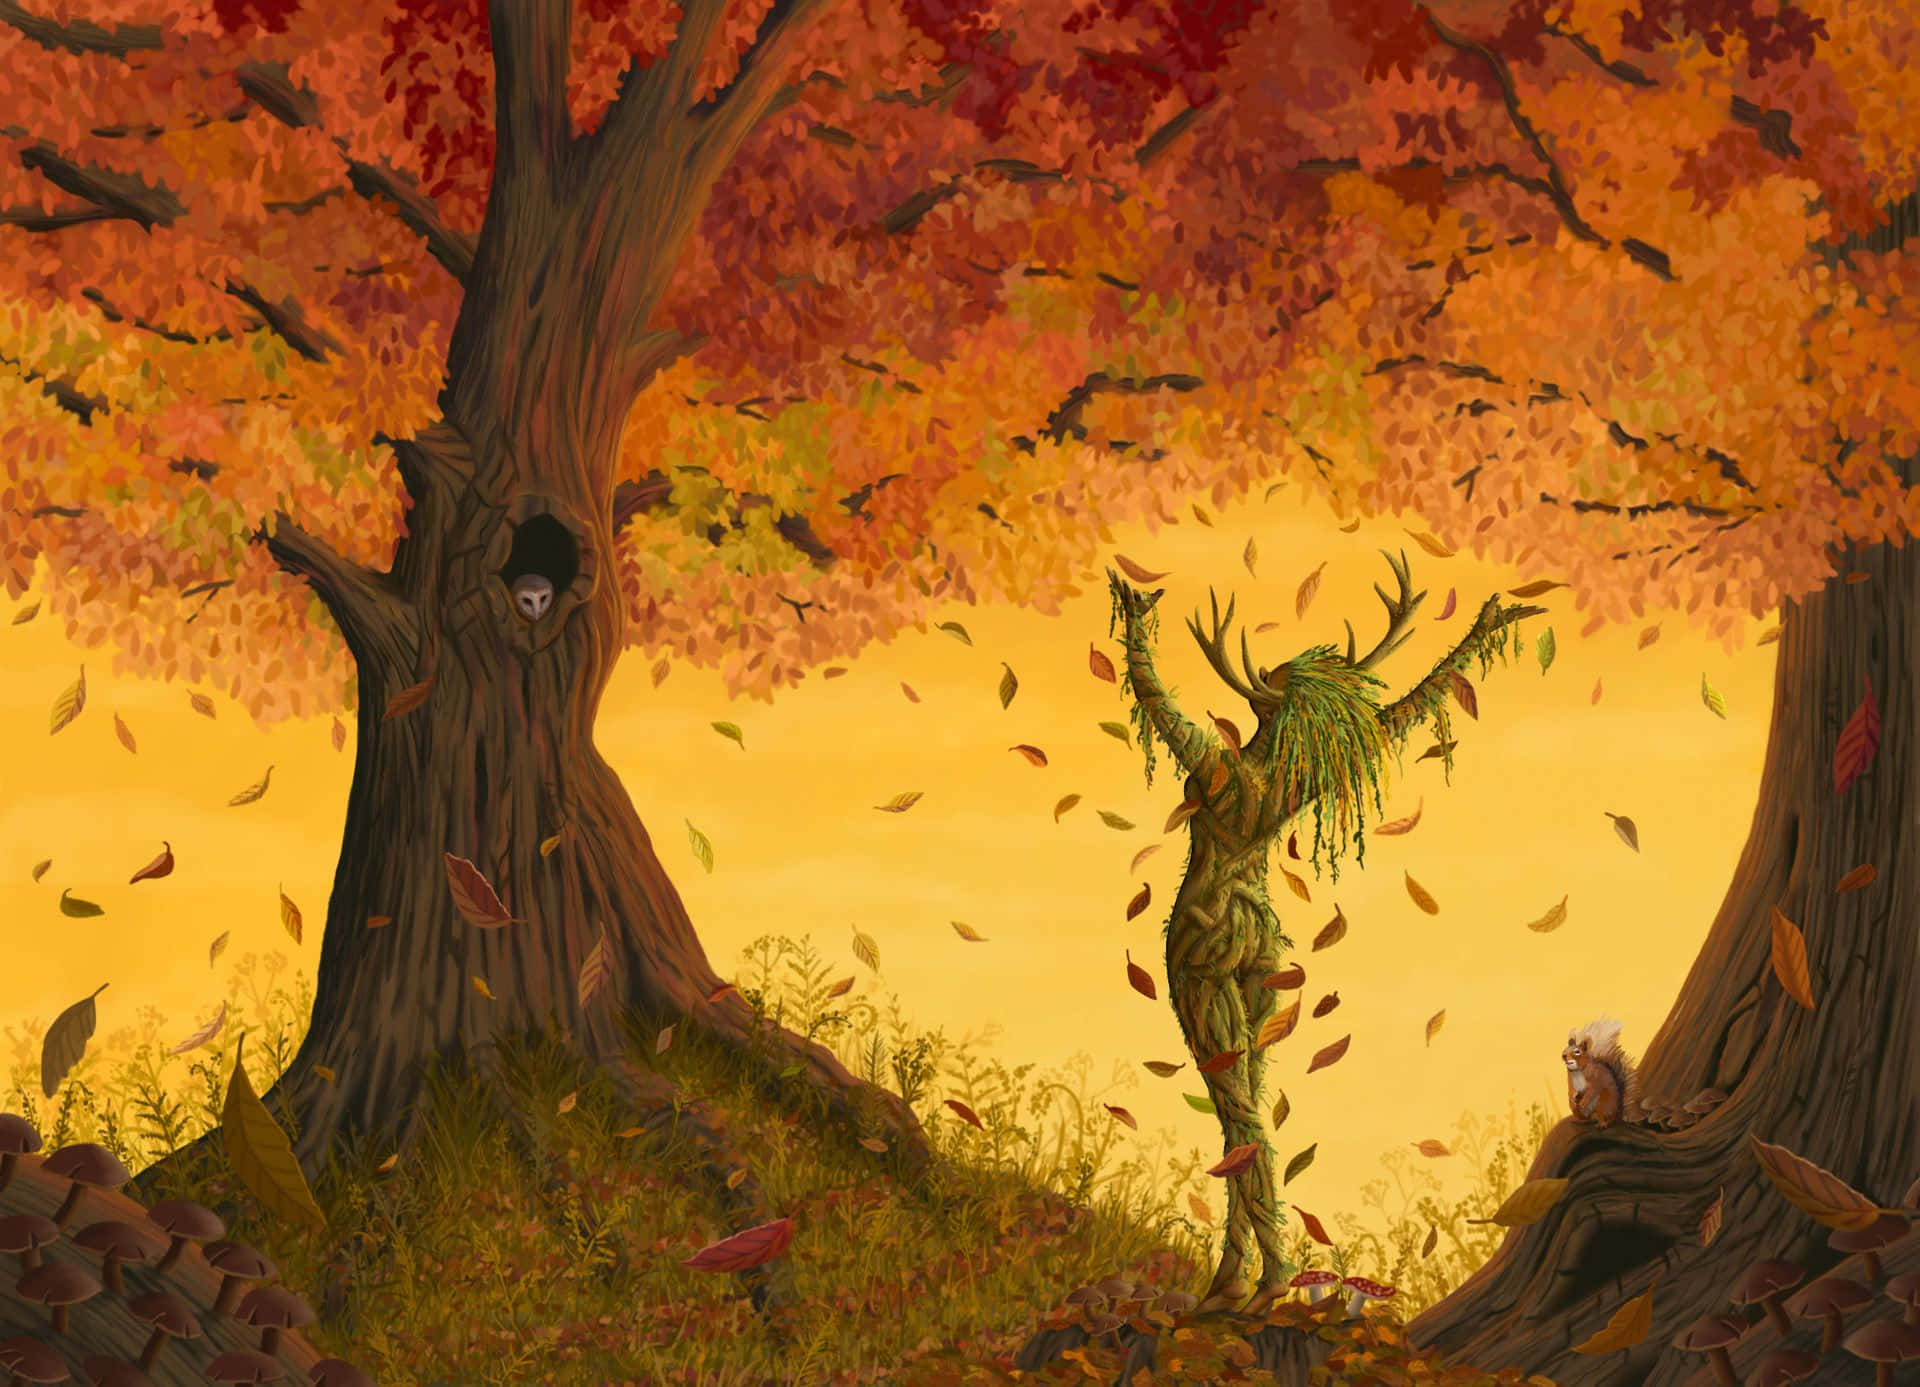 Einefrau Steht Im Wald, Während Um Sie Herum Blätter Fallen.